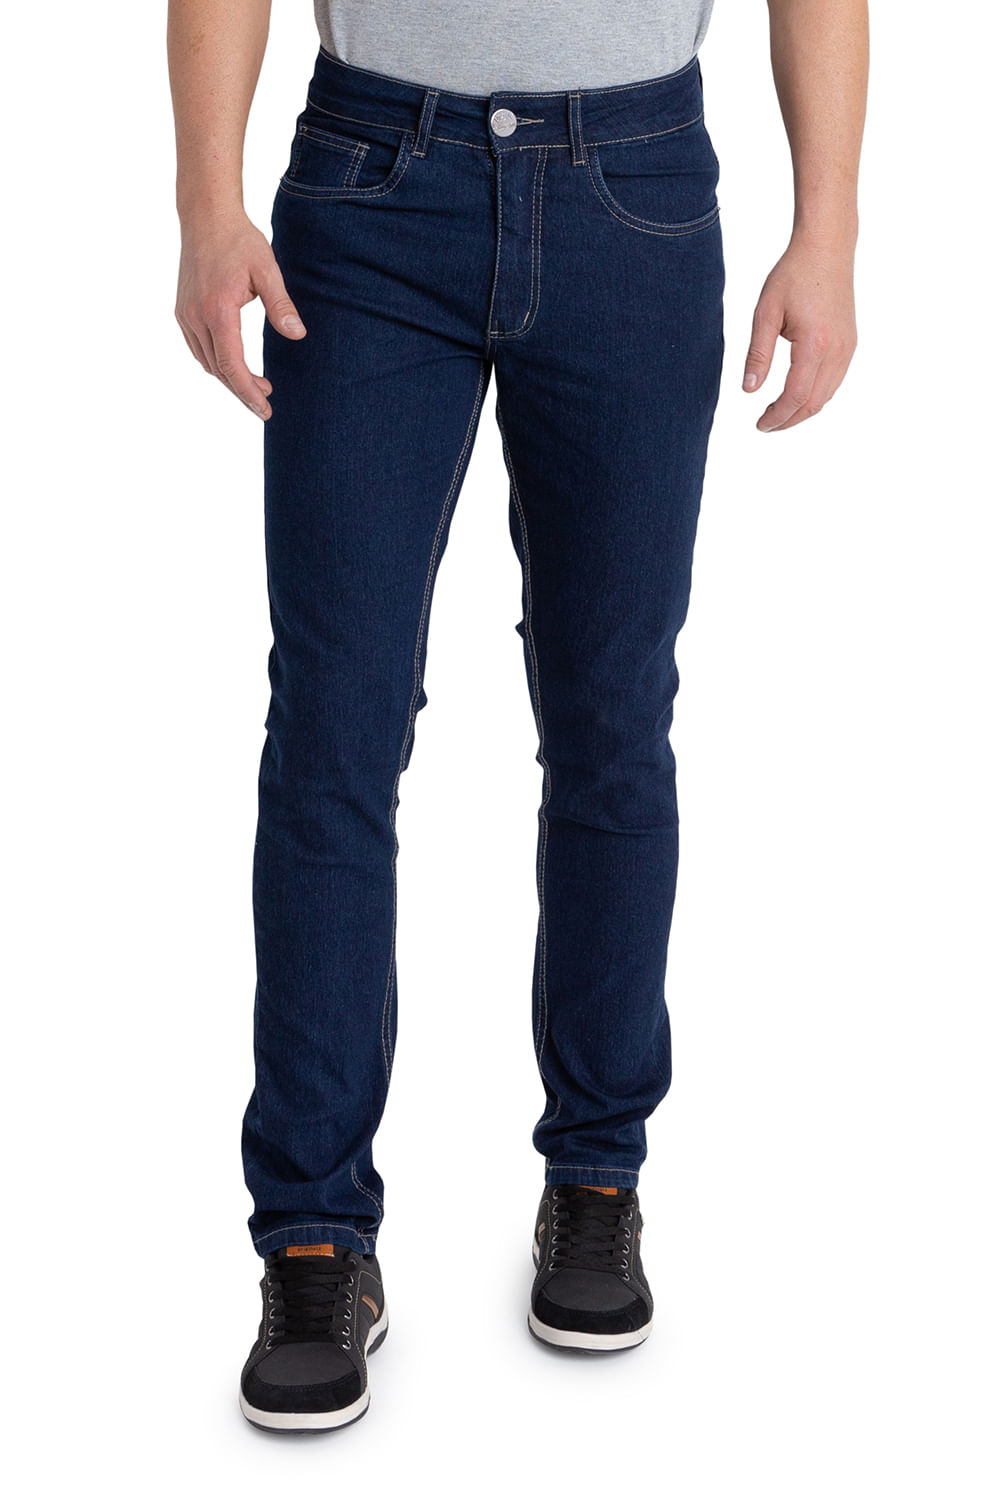 Calça Jeans Masculina Max Denim Slim Azul Escuro